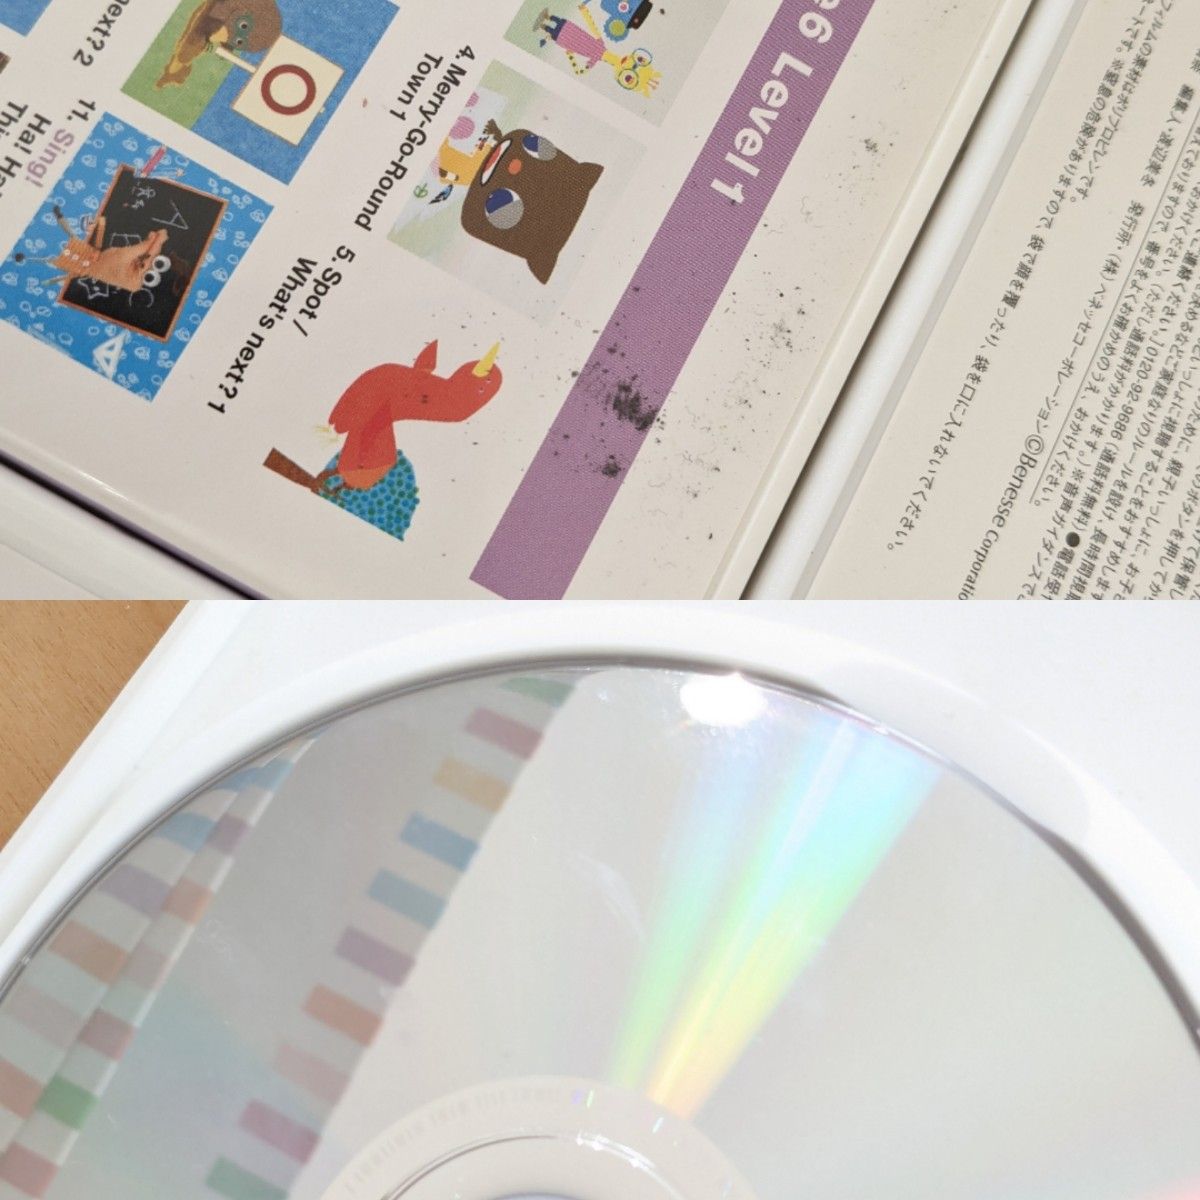  ワールドワイド キッズ イングリッシュ DVD全30本 CD12本 CD-ROM6本 英語 教材 幼児教育